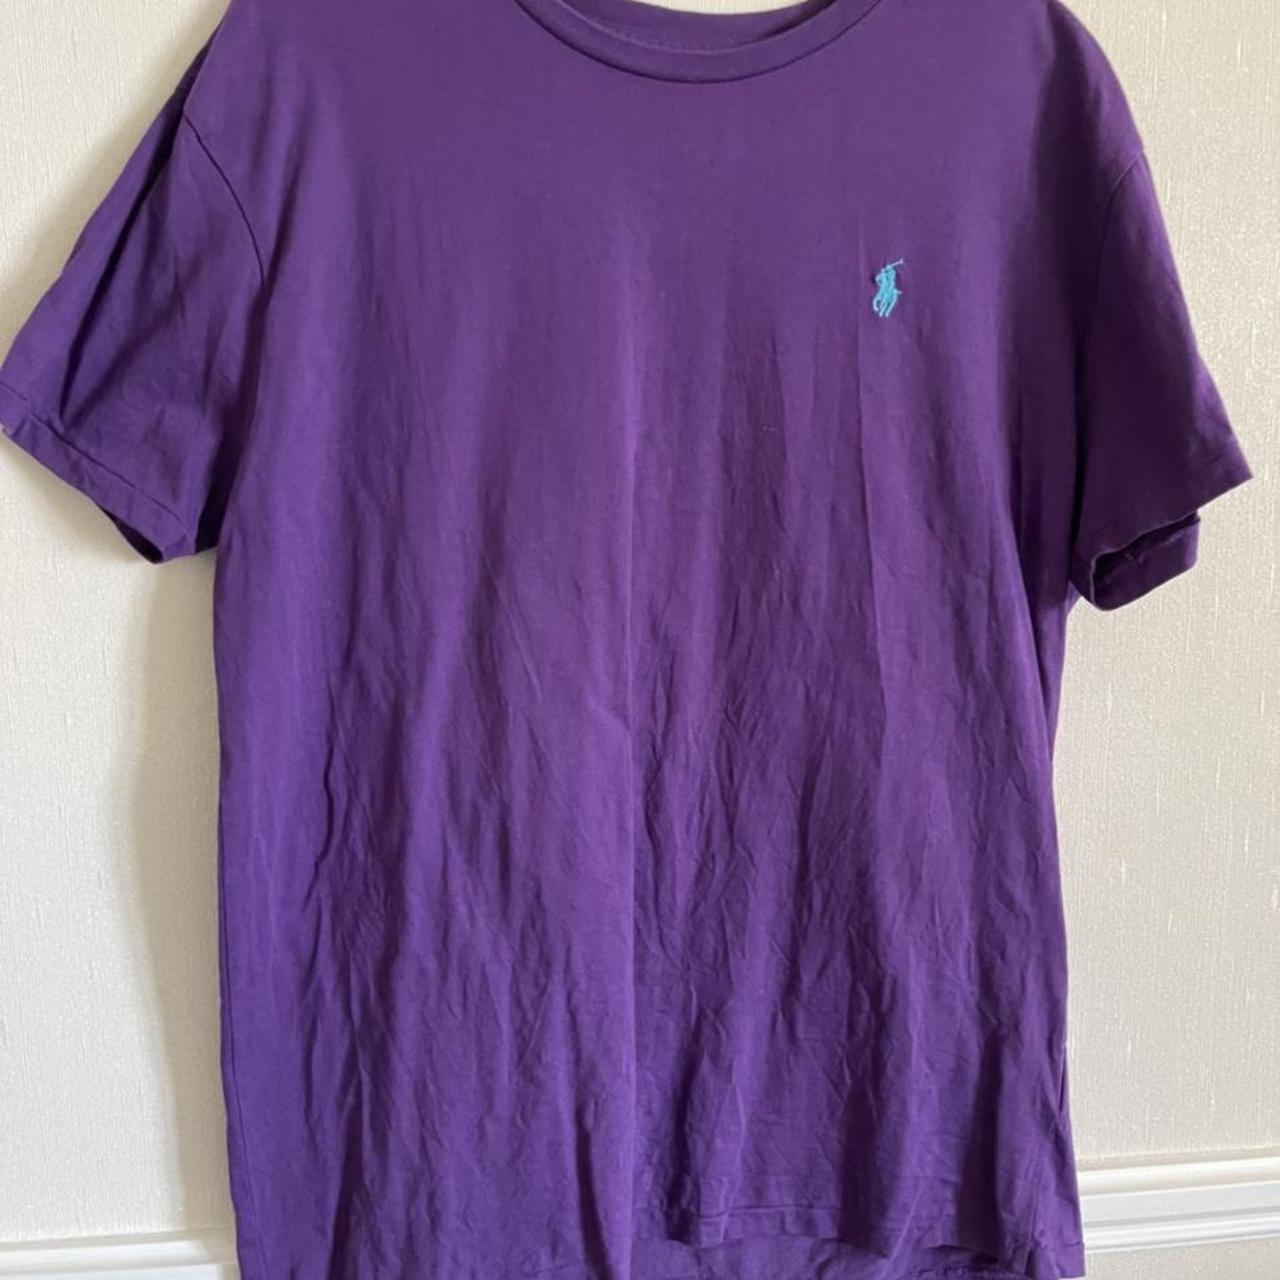 Purple Ralph Lauren T-shirt with blue logo size XL... - Depop